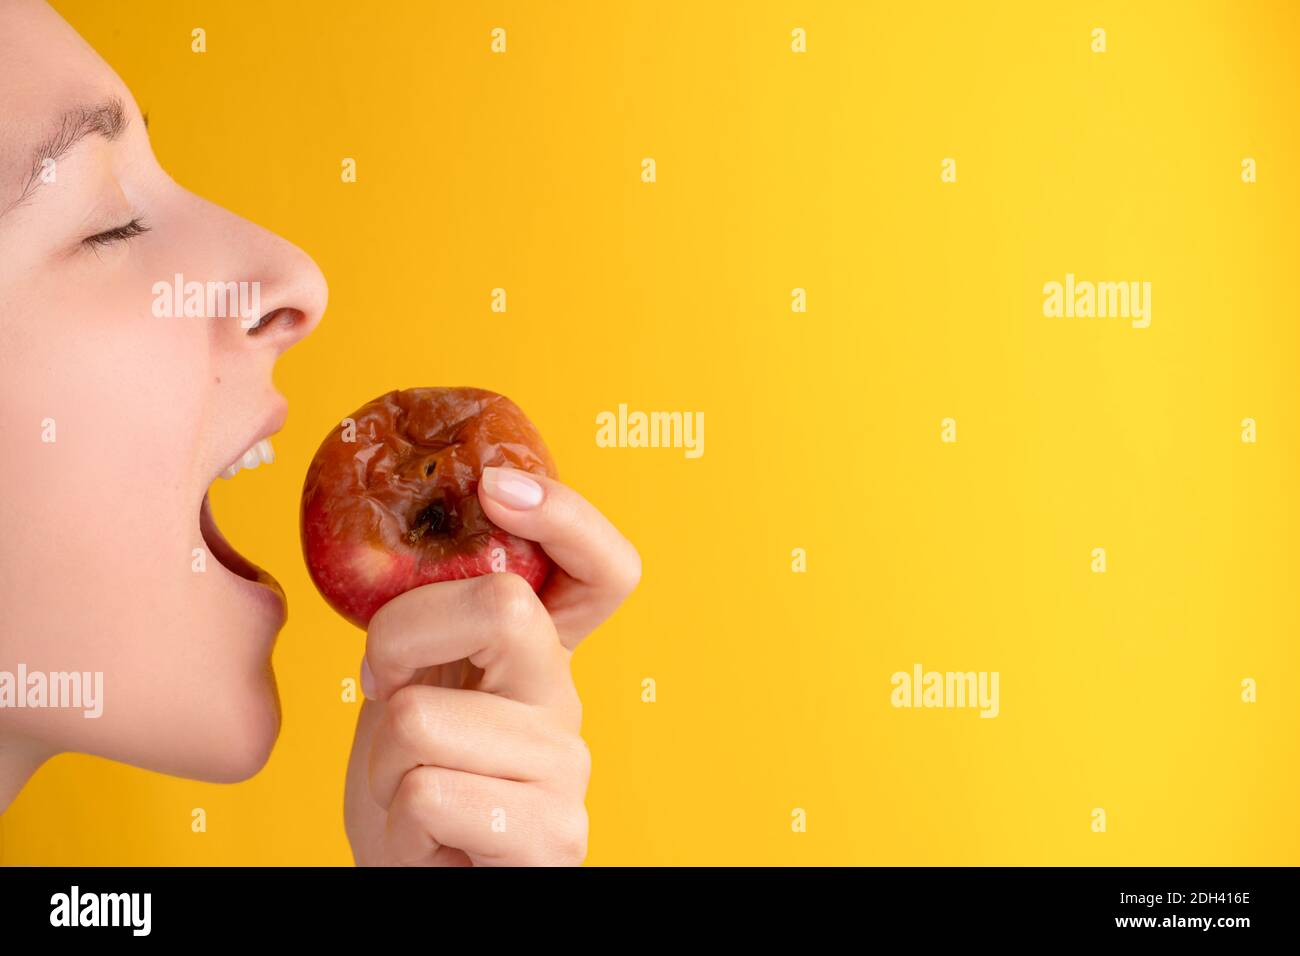 La jeune fille mord une pomme pourrie avec un ver sur fond jaune. Produits périmés, aliments indésirables. Banque D'Images